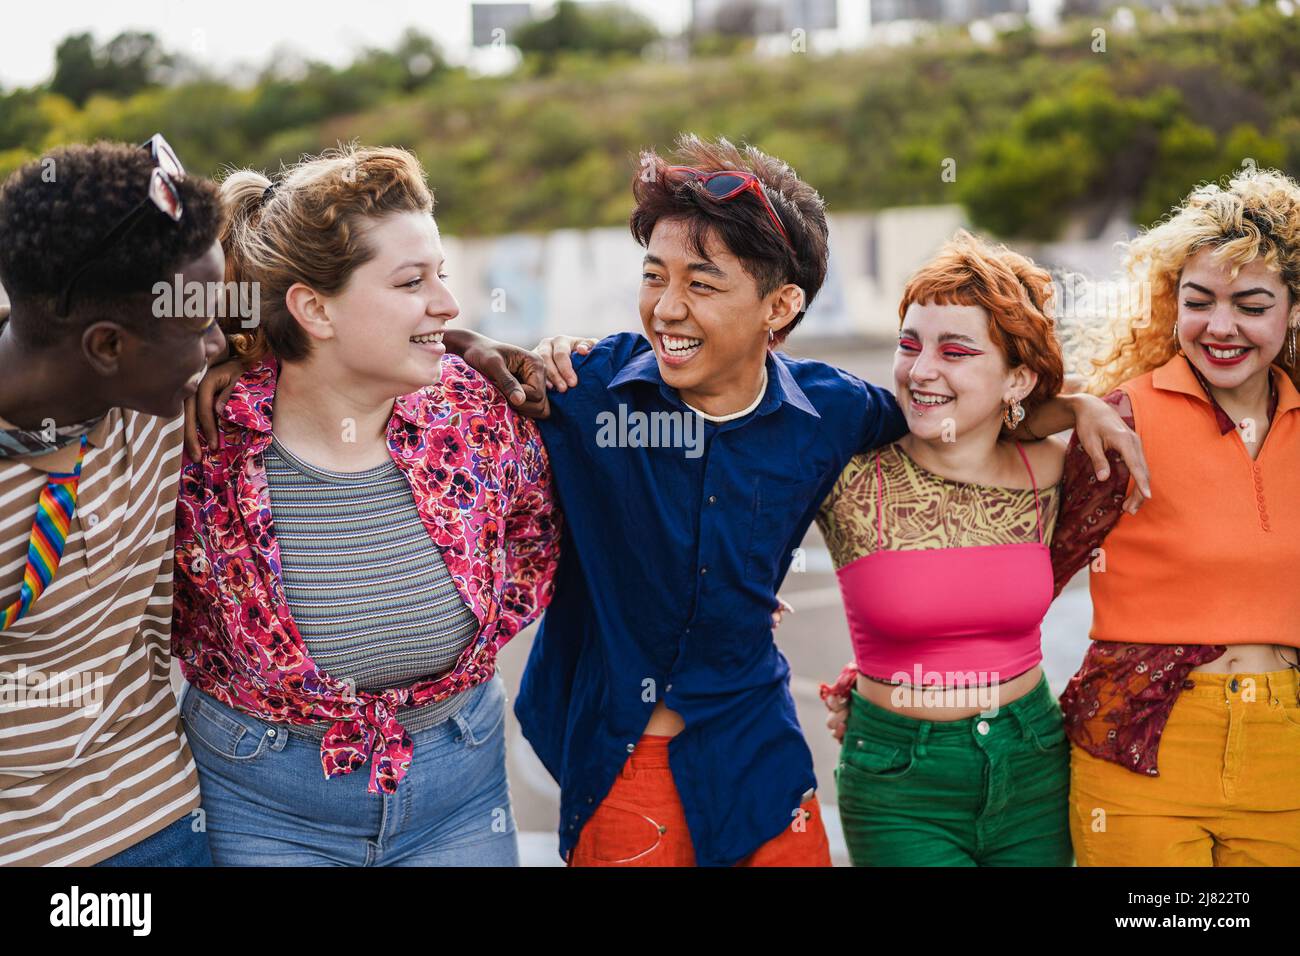 Junge diverse Freunde haben Spaß im Freien zusammen lachen - Schwerpunkt auf asiatische Kerl Gesicht Stockfoto